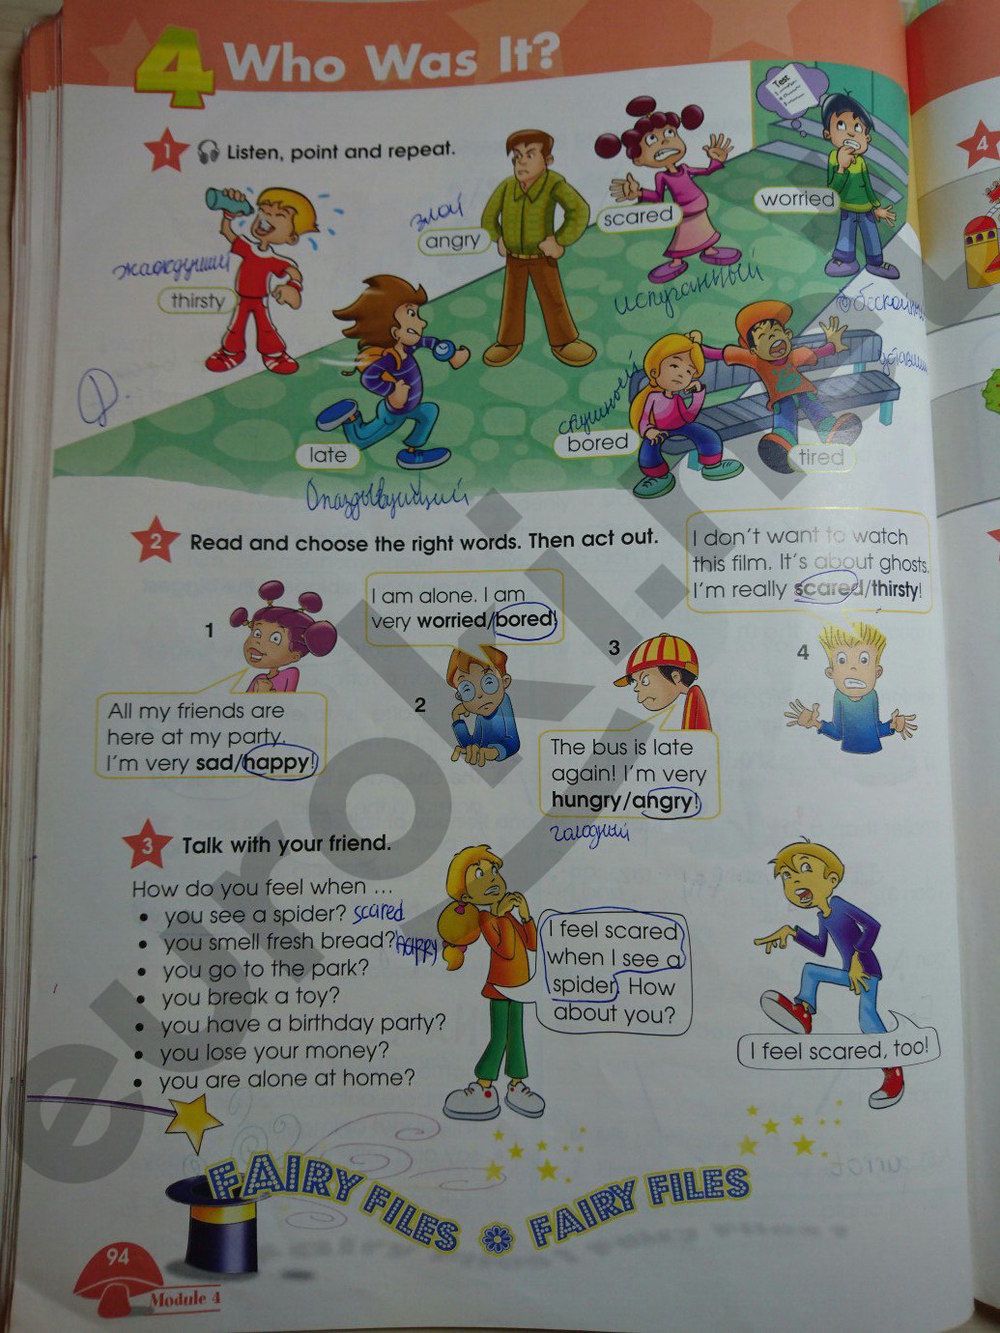 Английский язык 7 класс баранова учебник ответы